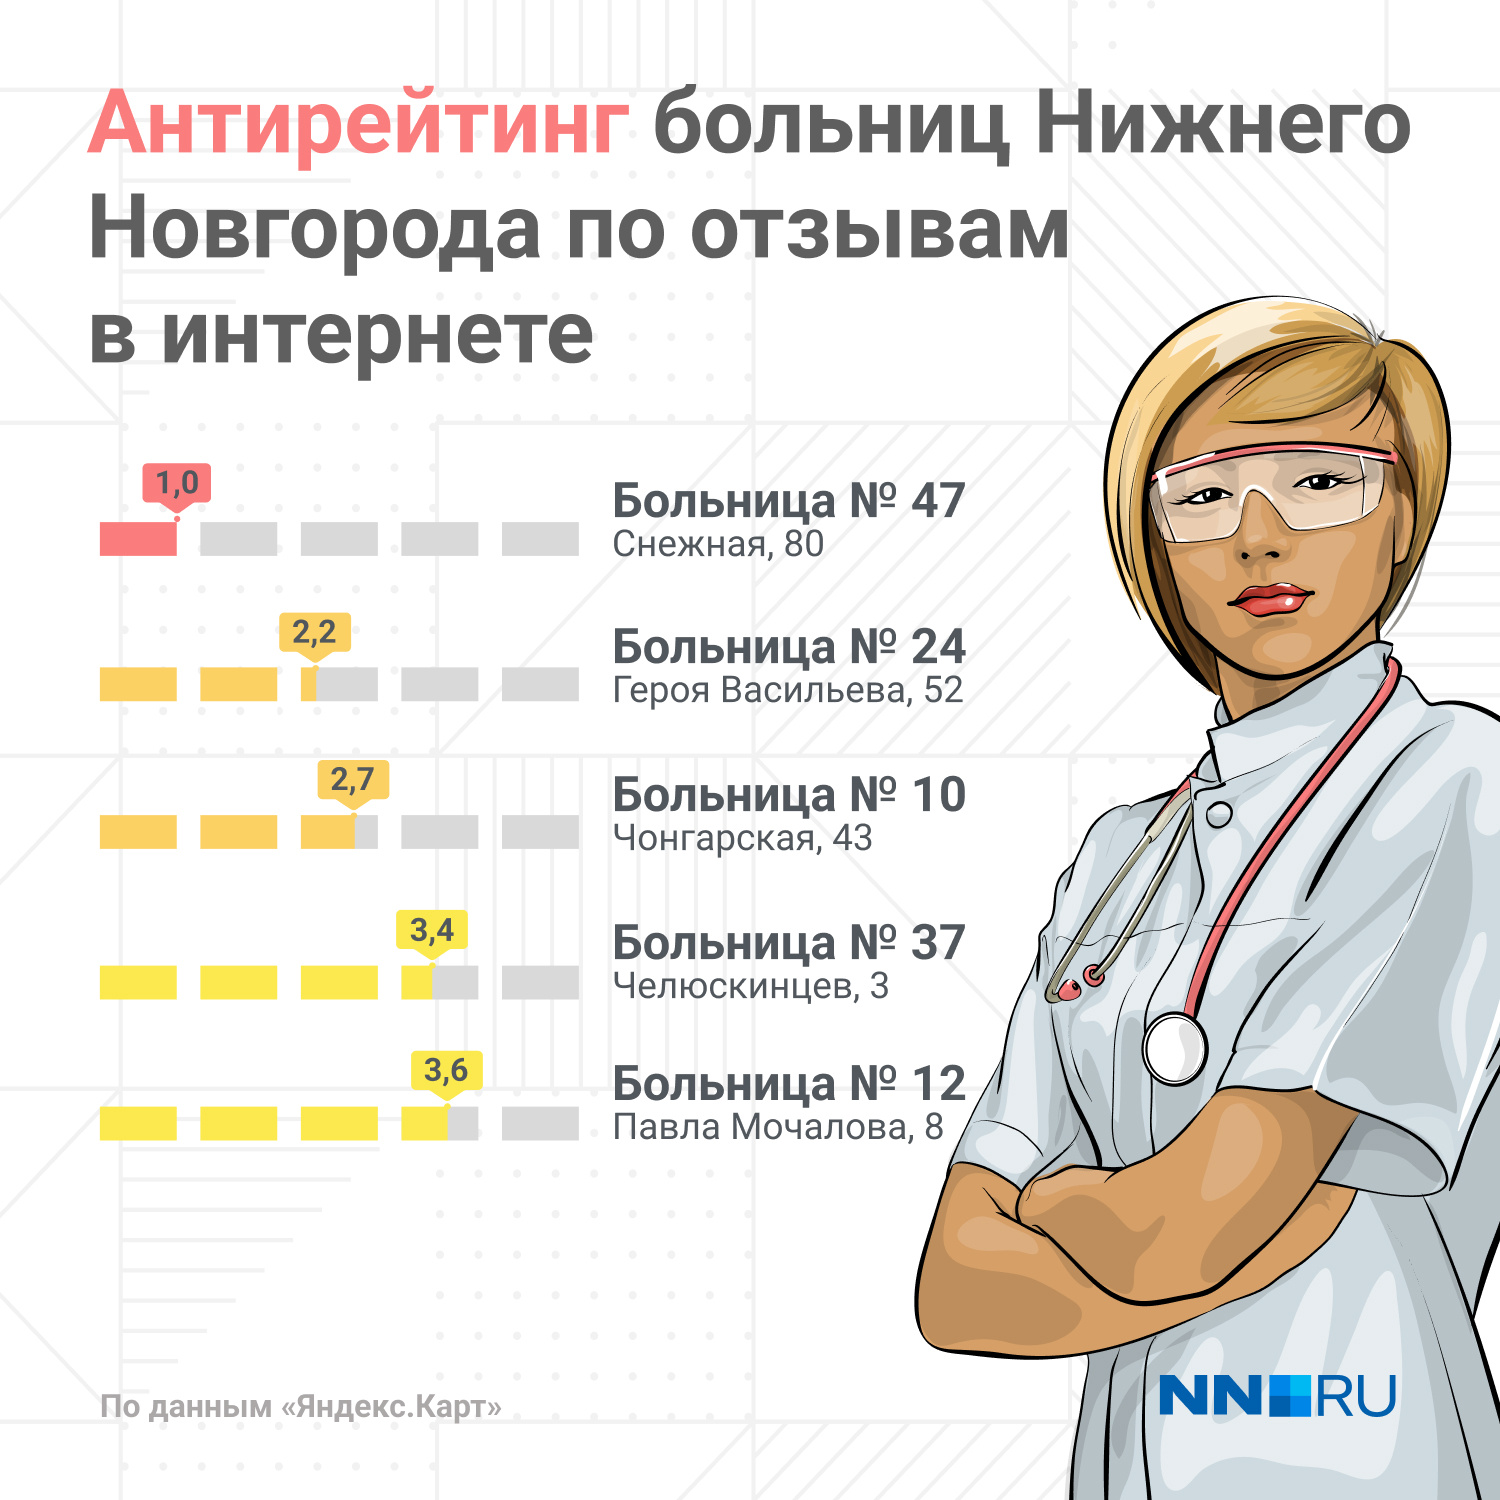 Сайт поликлиники нижнего новгорода. Рейтинг поликлиник Нижнего.